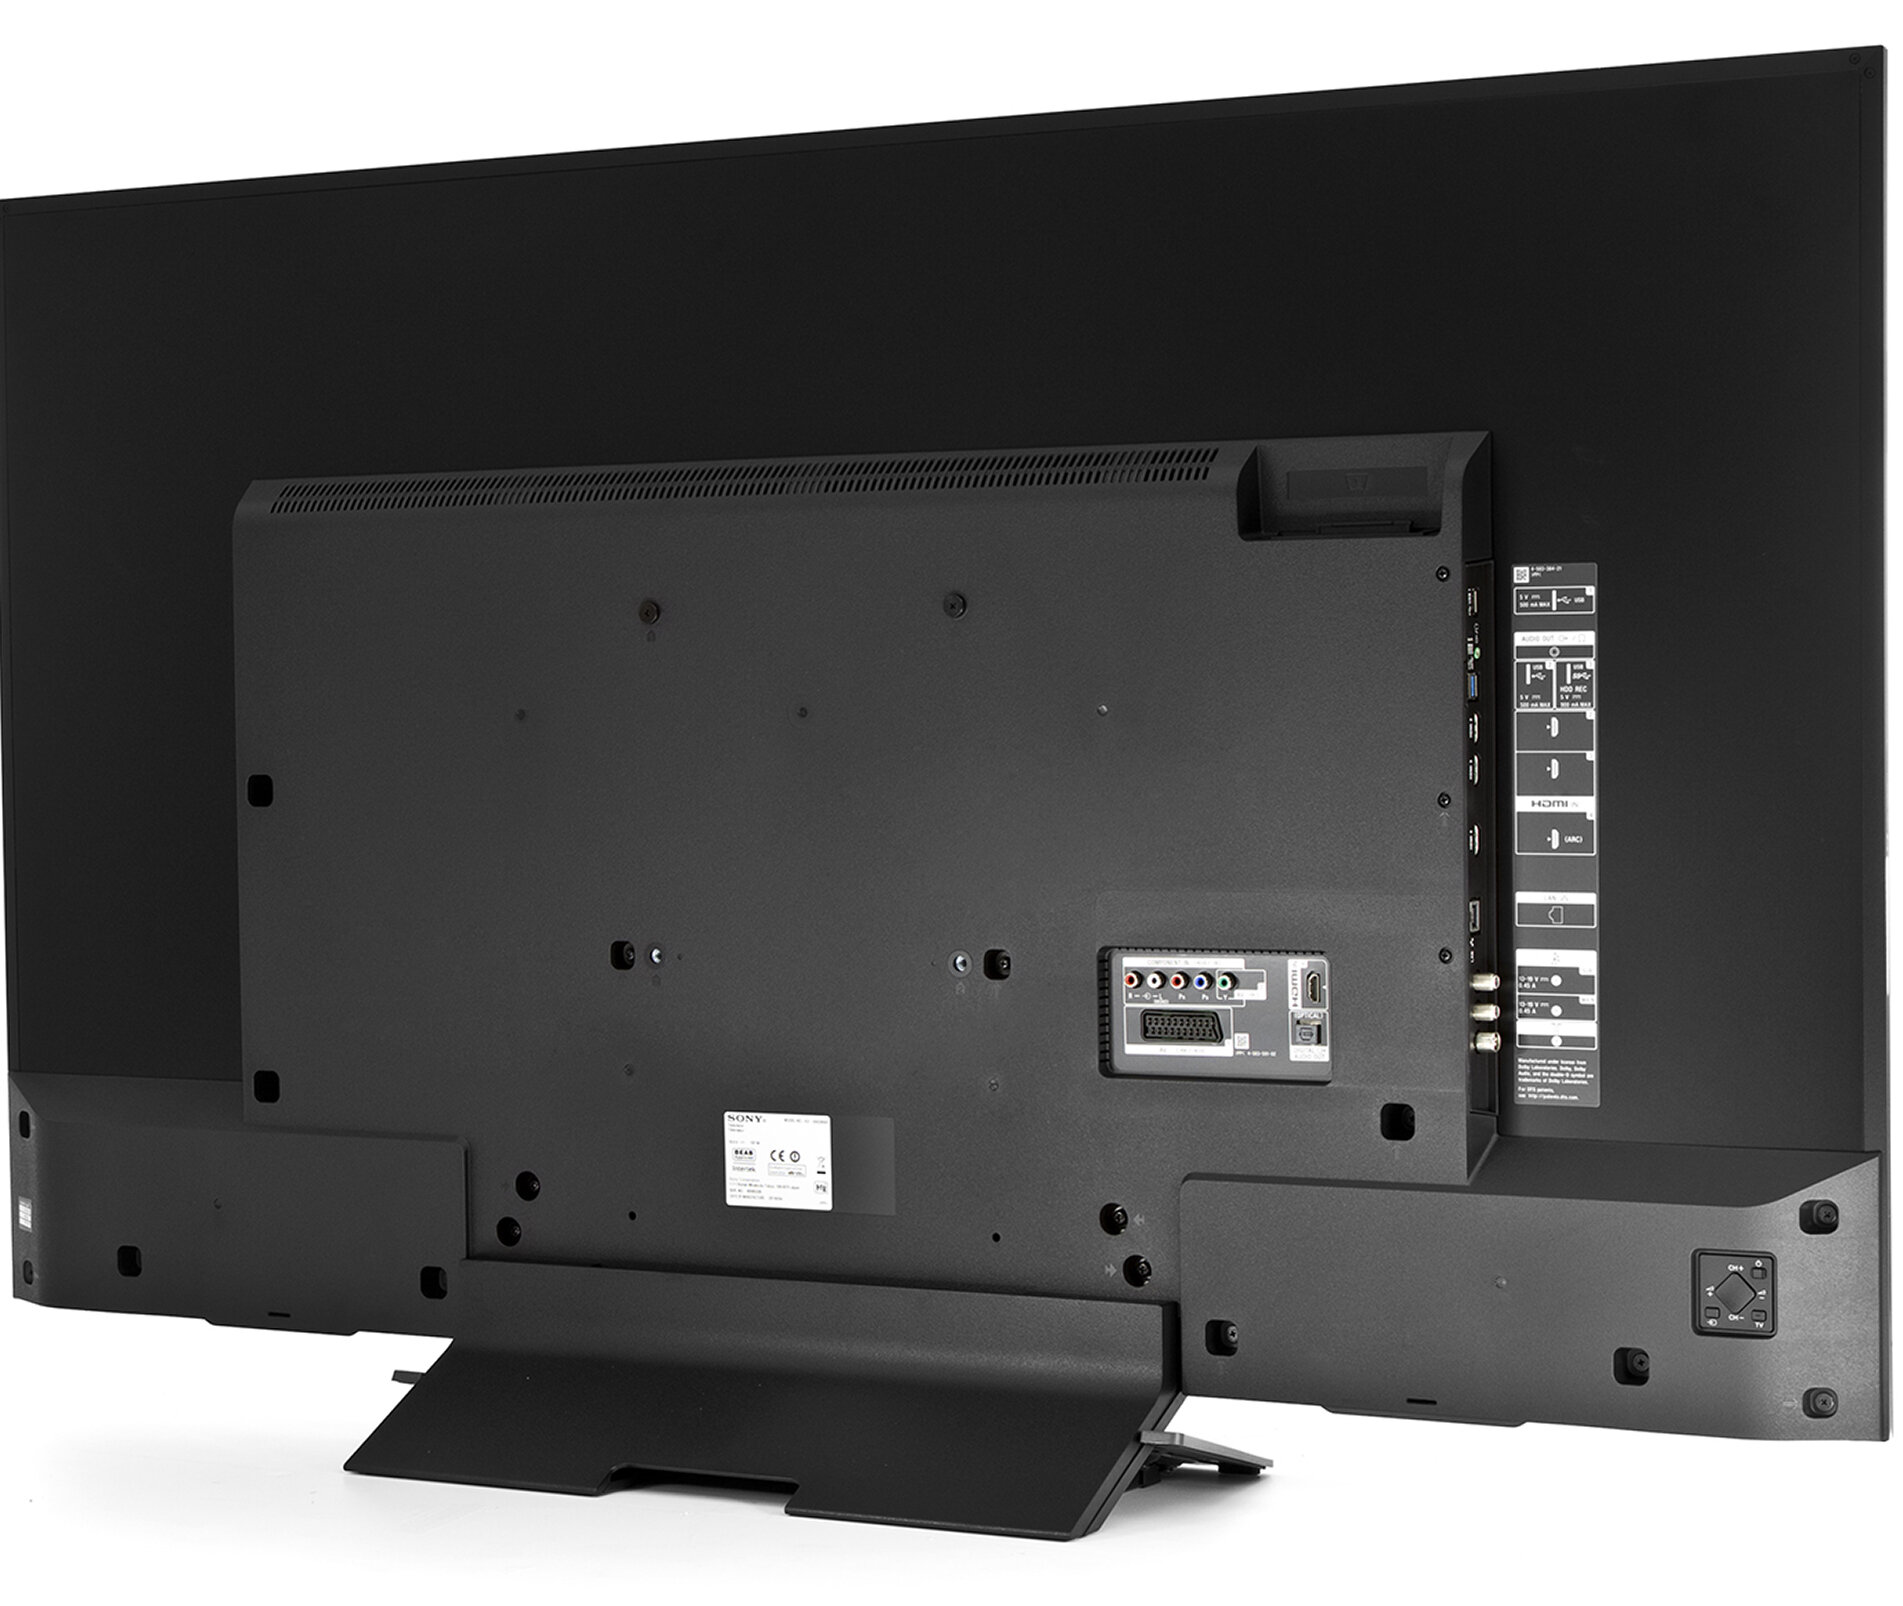 SONY LED KD-65XD8505 Telewizor - niskie ceny i opinie w Media Expert